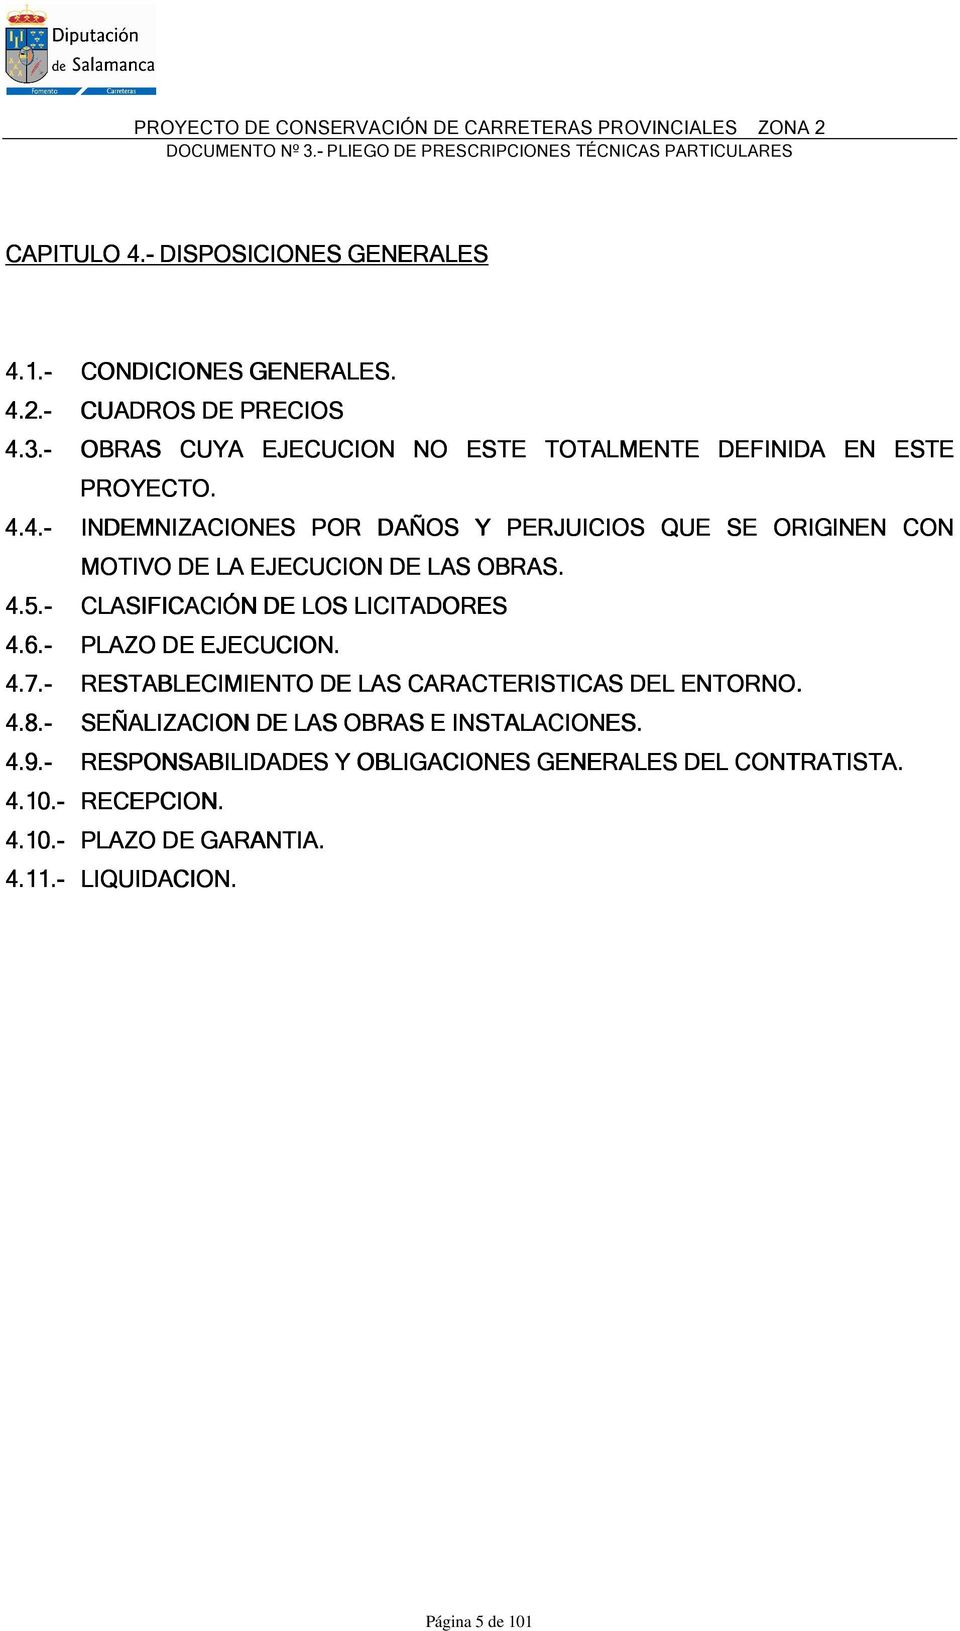 4.5.- CLASIFICACIÓN DE LOS LICITADORES 4.6.- PLAZO DE EJECUCION. 4.7.- RESTABLECIMIENTO DE LAS CARACTERISTICAS DEL ENTORNO. 4.8.- SEÑALIZACION DE LAS OBRAS E INSTALACIONES. 4.9.